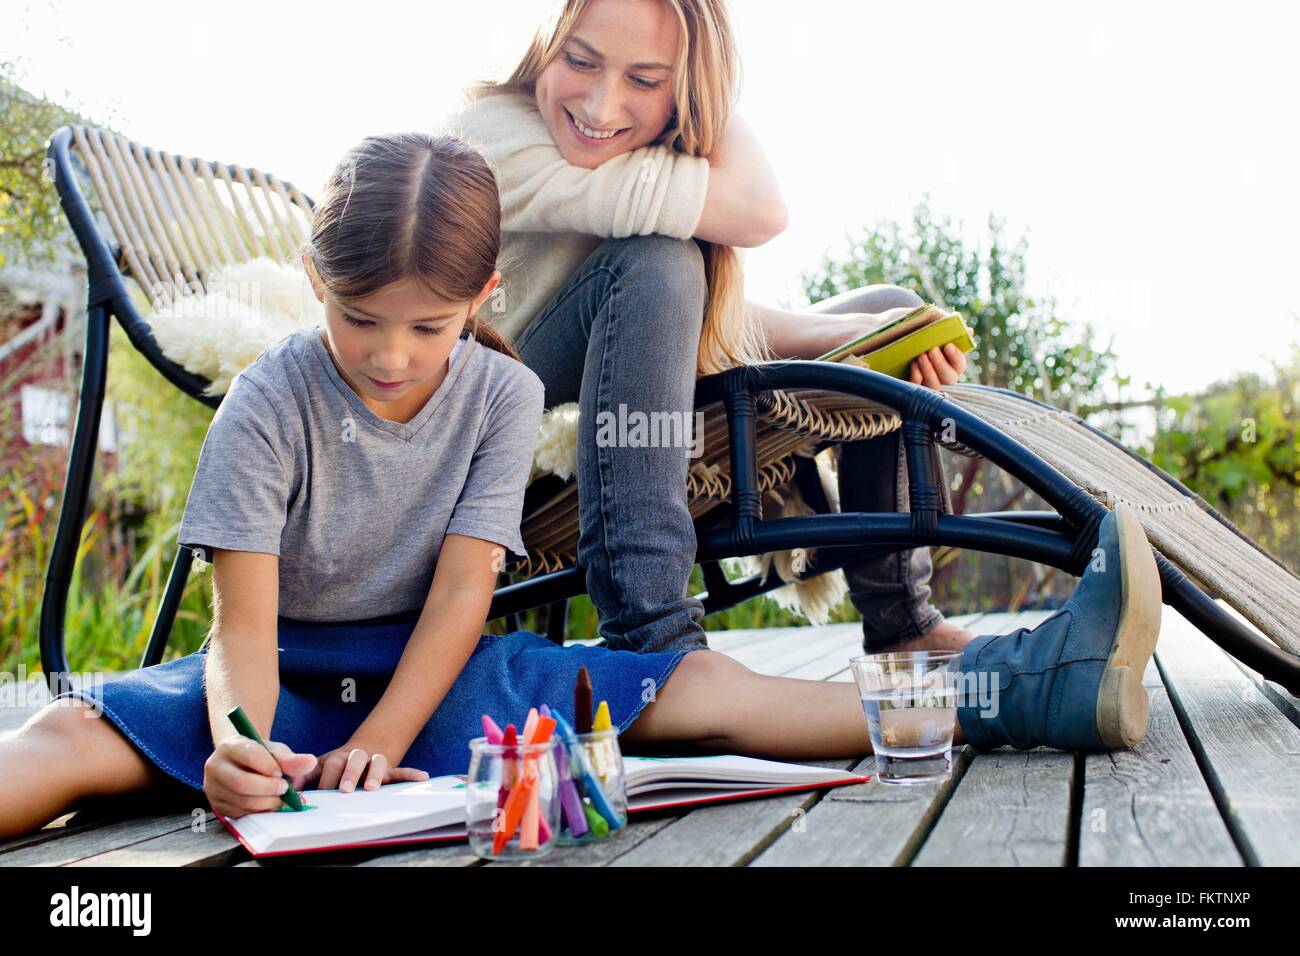 Girl sur lame avec mère assis à proximité, smiling Banque D'Images